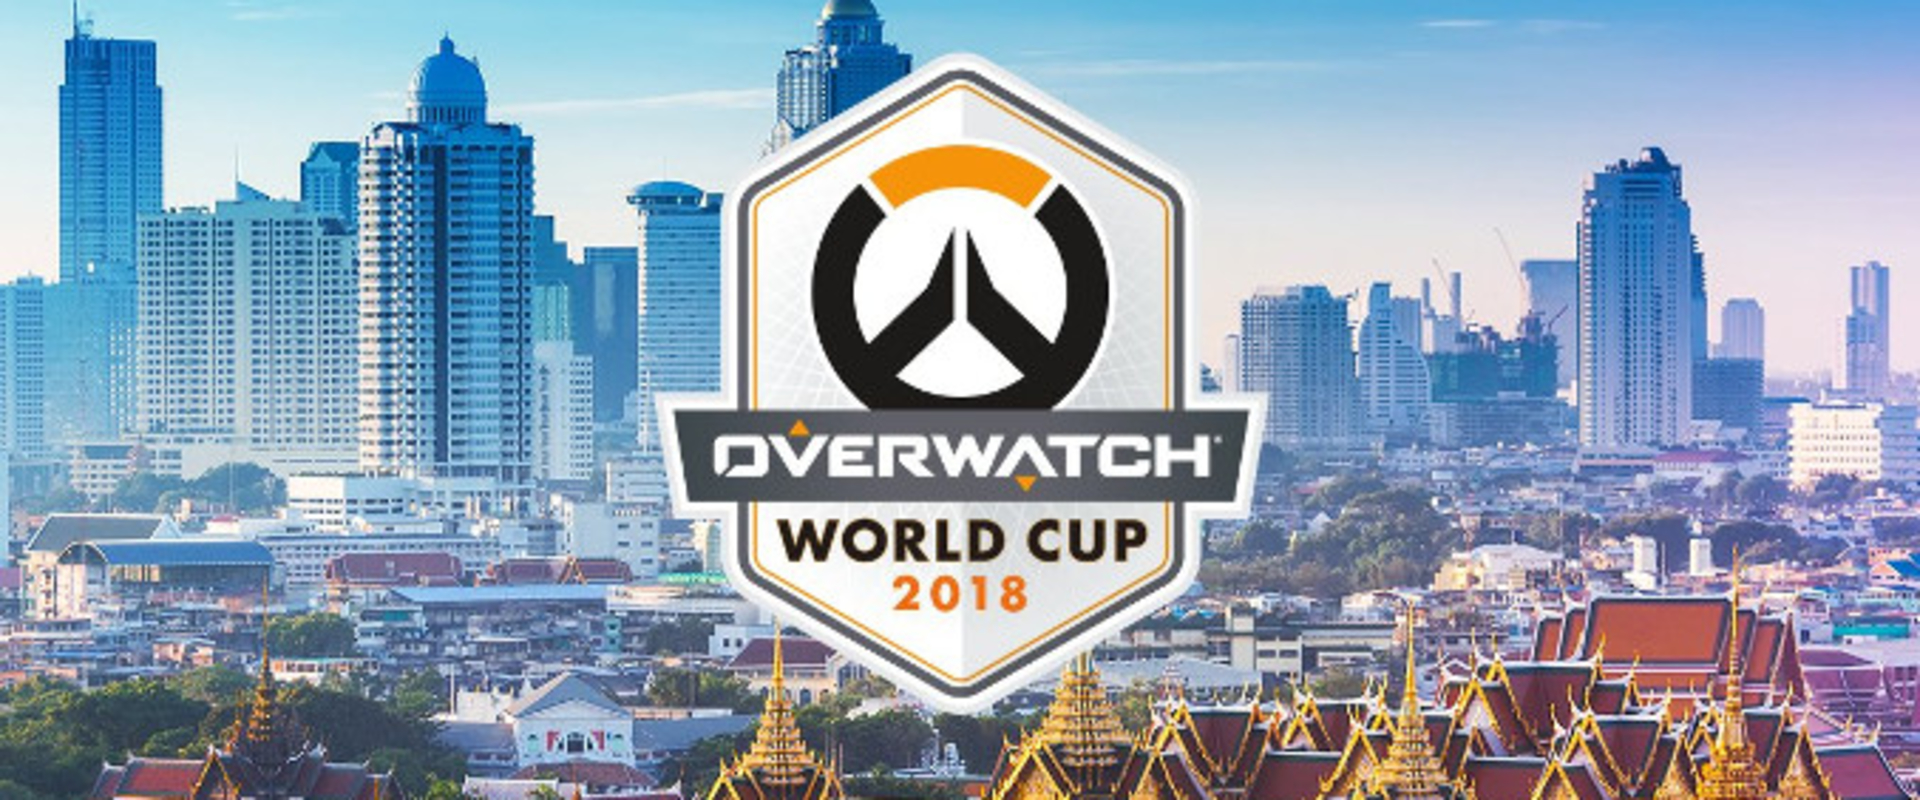 Izgalmas meccsekkel zárult az Overwatch World Cup bangkoki csoportköre